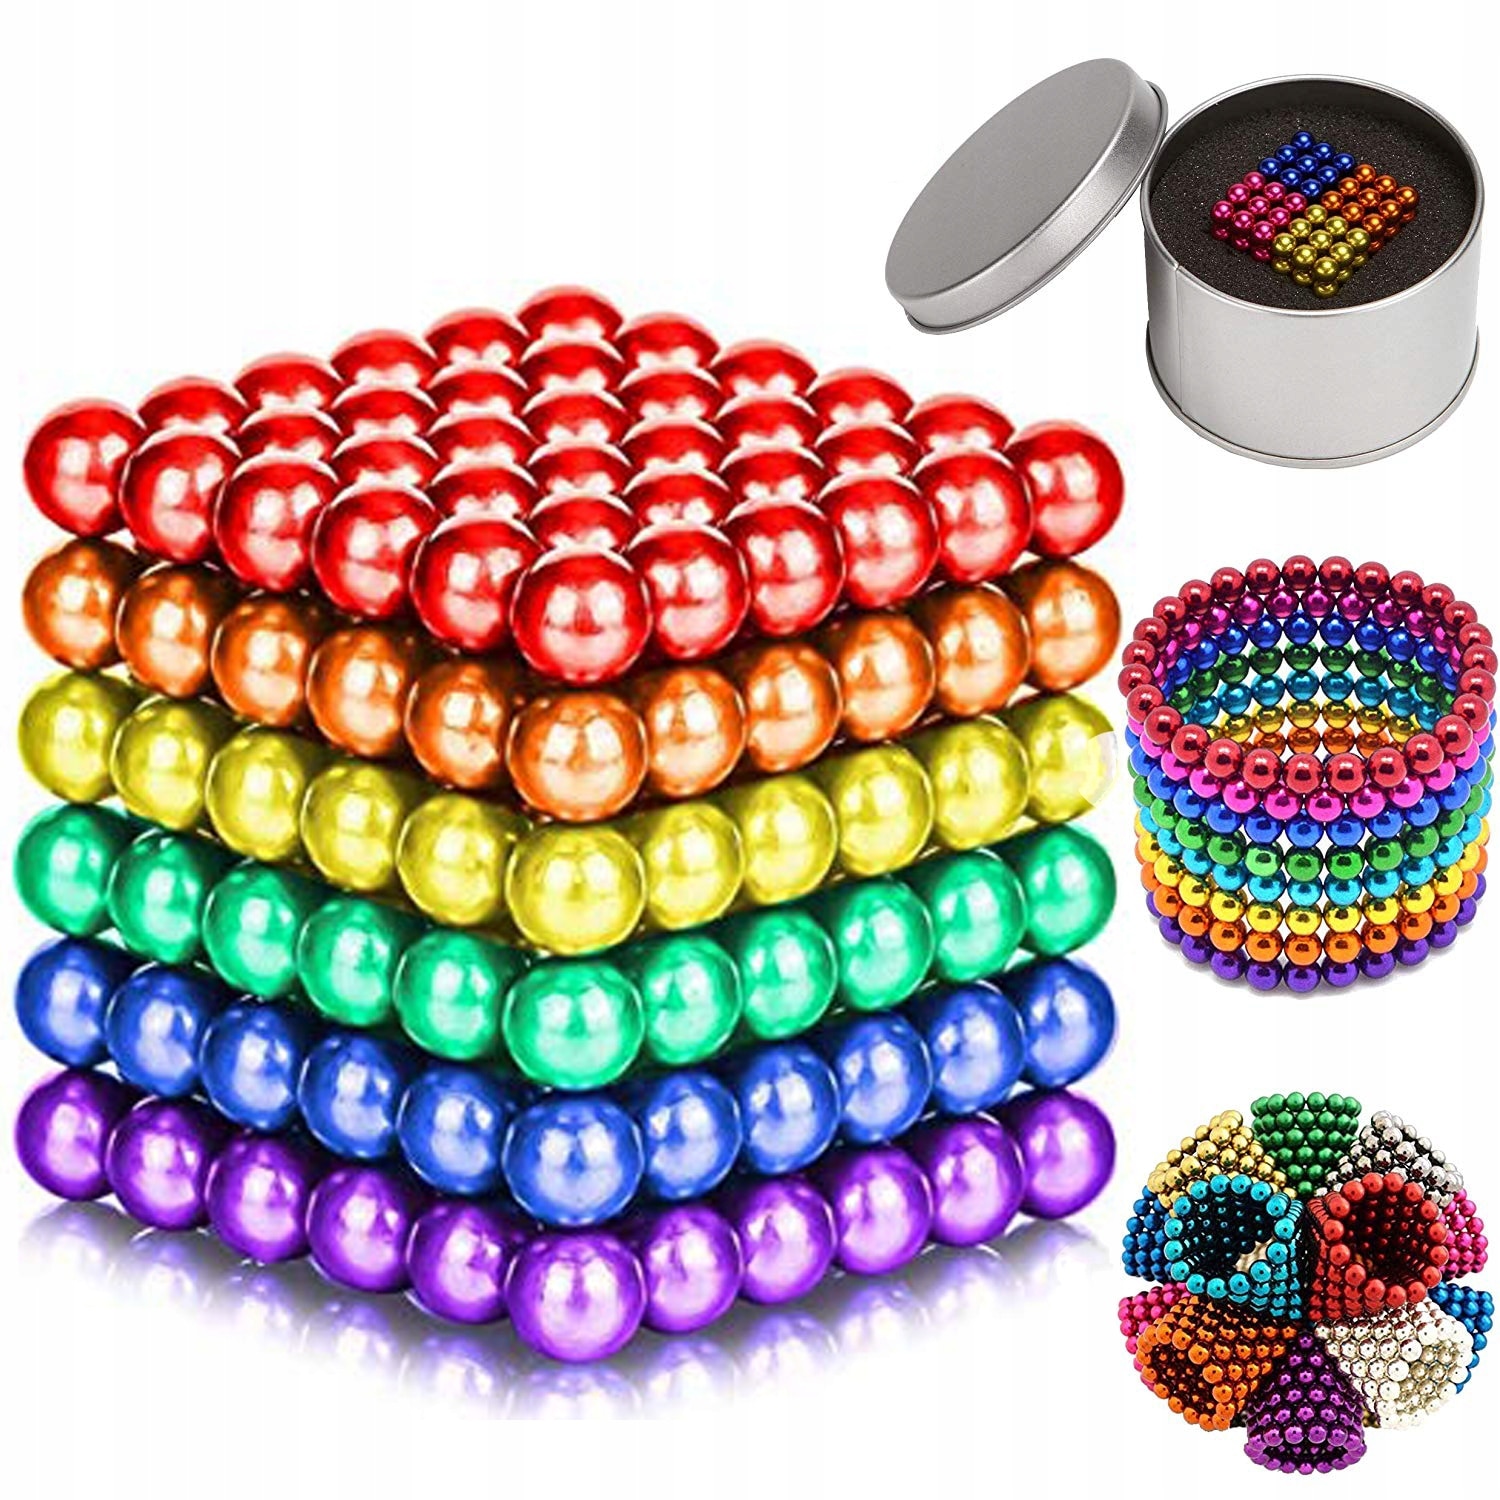 Какие шарики купить. Неокуб 3мм магнитный. Неокуб - набор 216 магнитных шариков. Нано кубик магнитные шарики. Магнитные шарики мм10 конструктор.